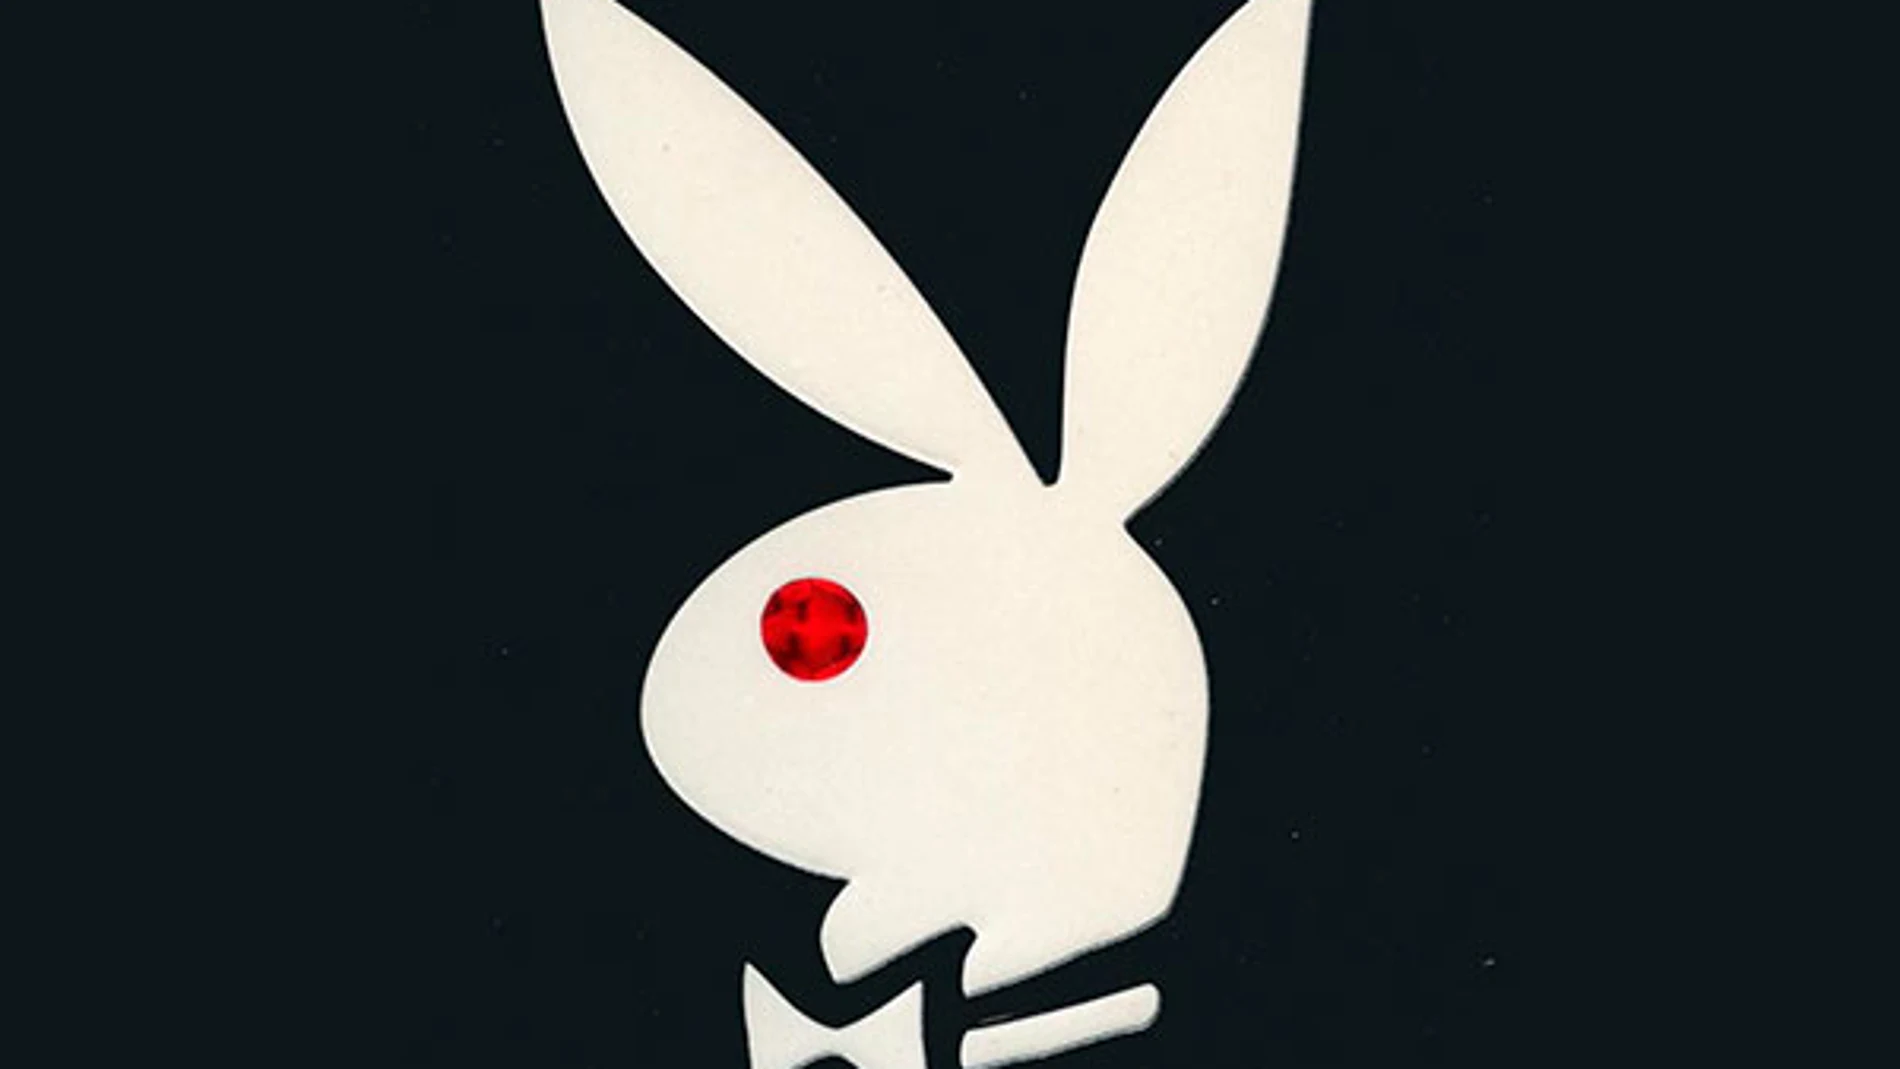 Playboy planea construir una nueva mansiÃ³n en el metaverso